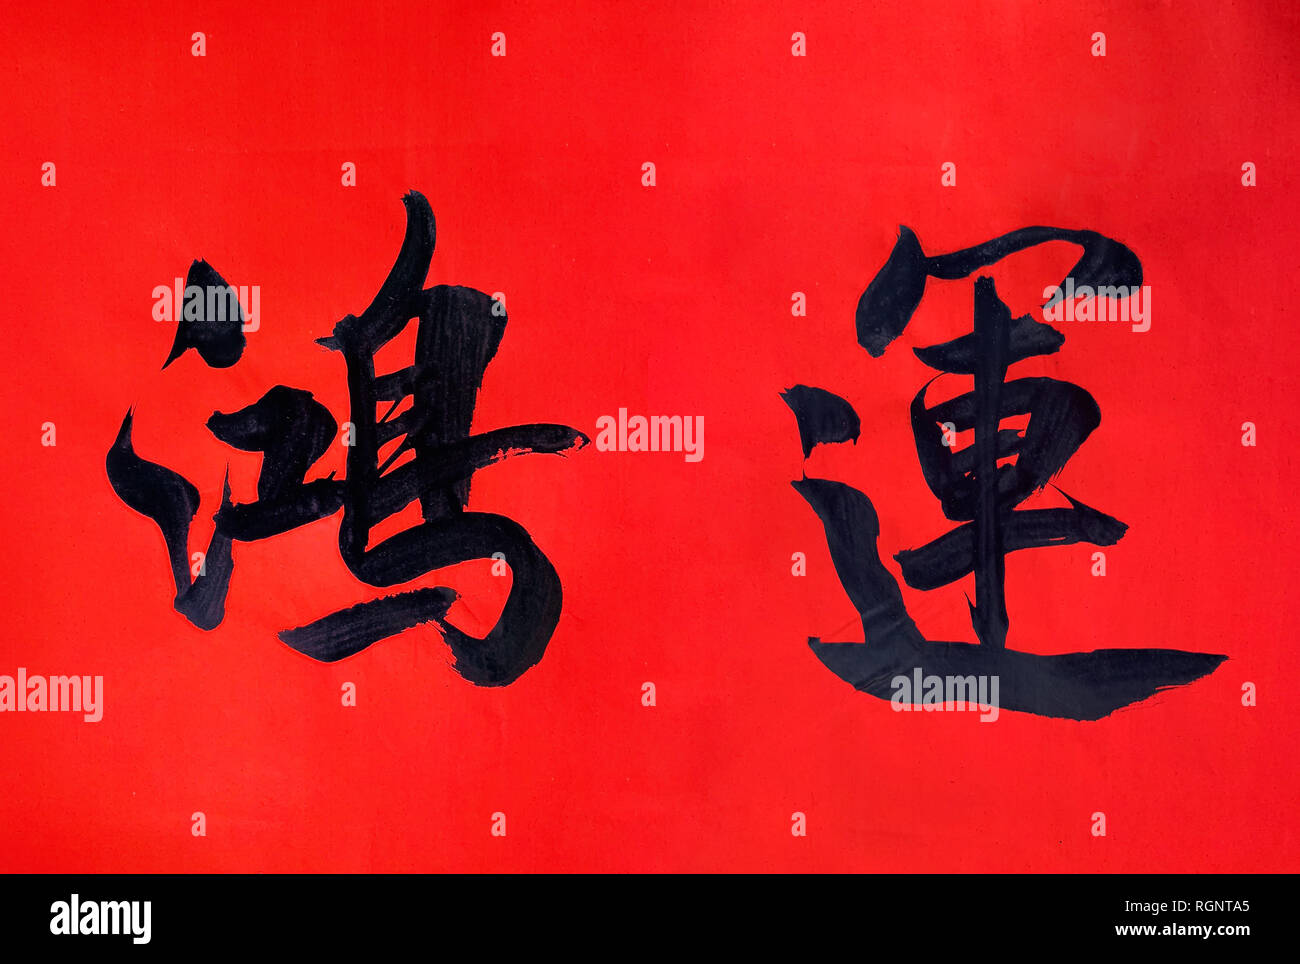 Scrittura dei caratteri cinesi rosso su carta di riso per festeggiare il nuovo anno cinese. Significato cinese - fortuna e buona fortuna, tipicamente simbolo o blessi Foto Stock